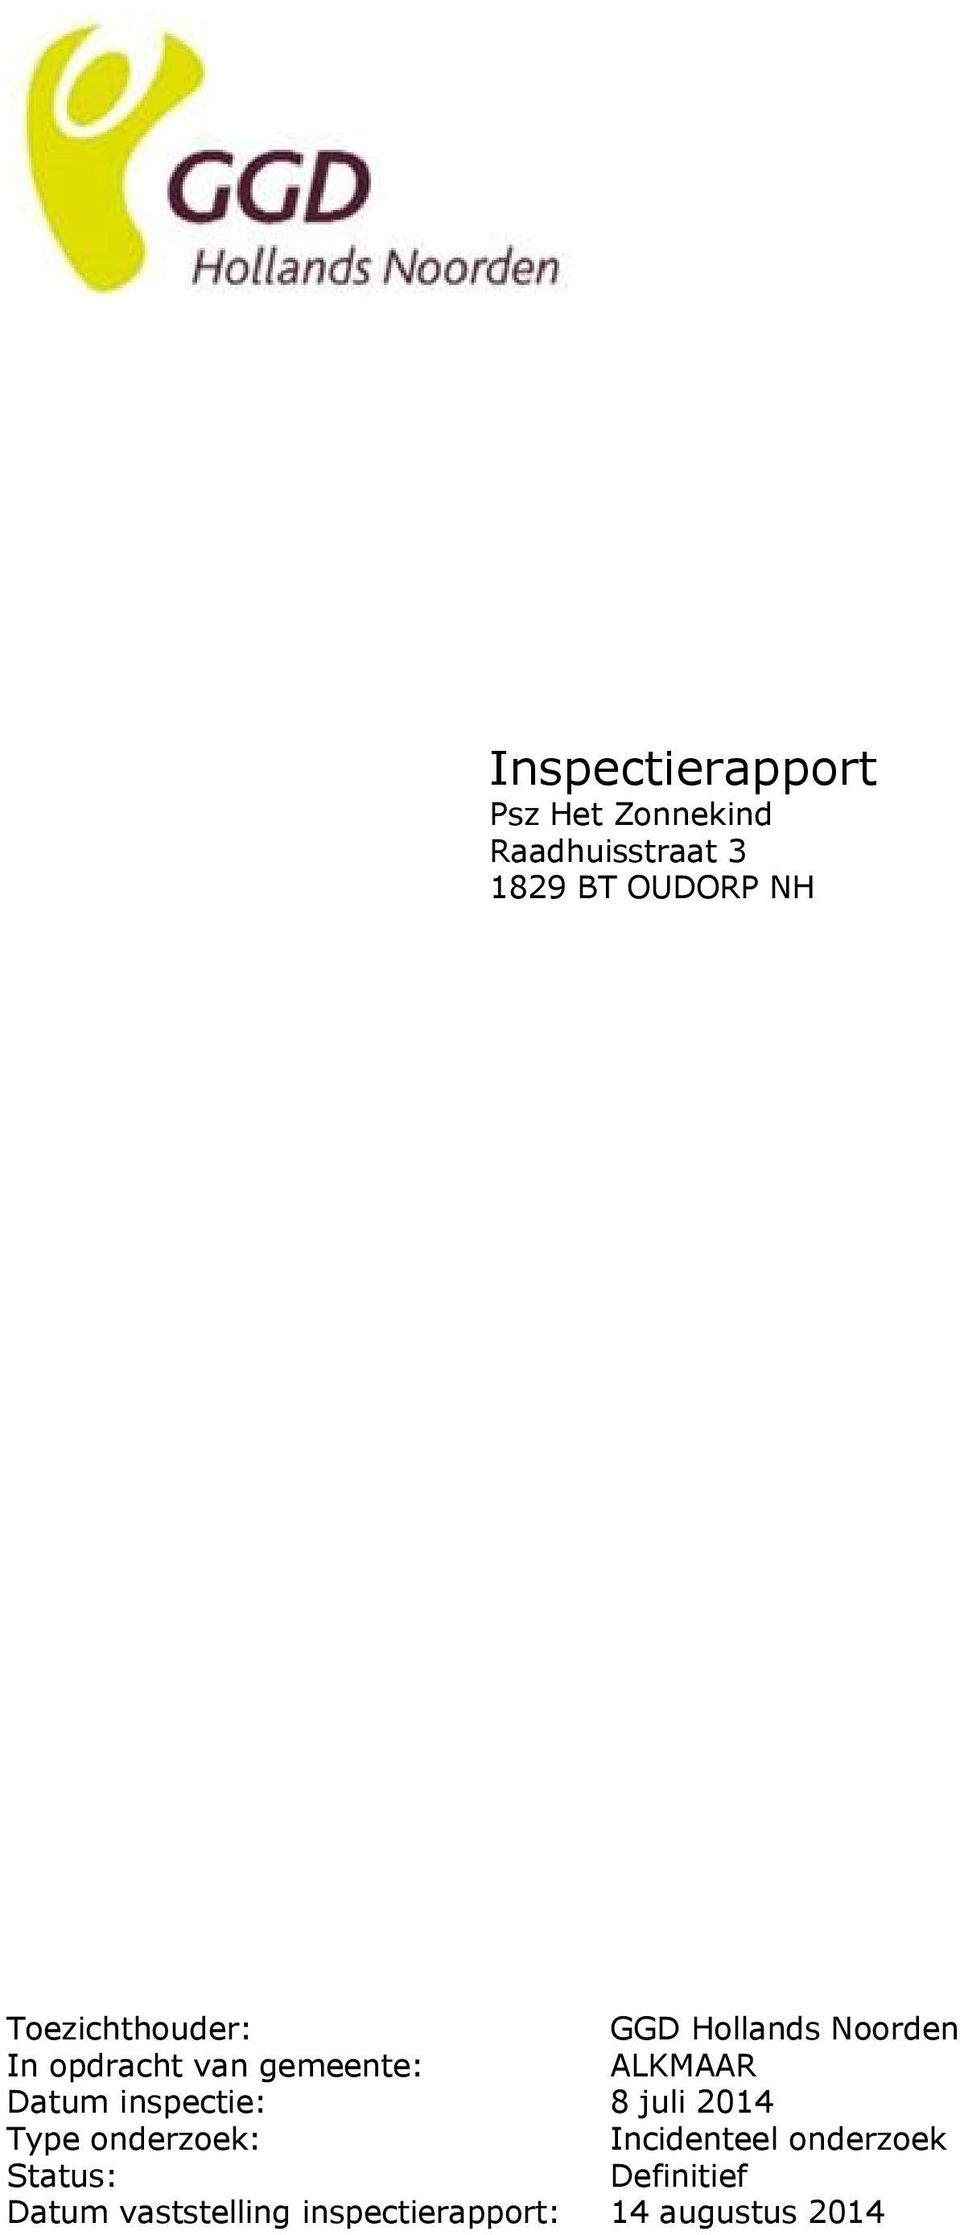 ALKMAAR Datum inspectie: 8 juli 2014 Type onderzoek: Incidenteel